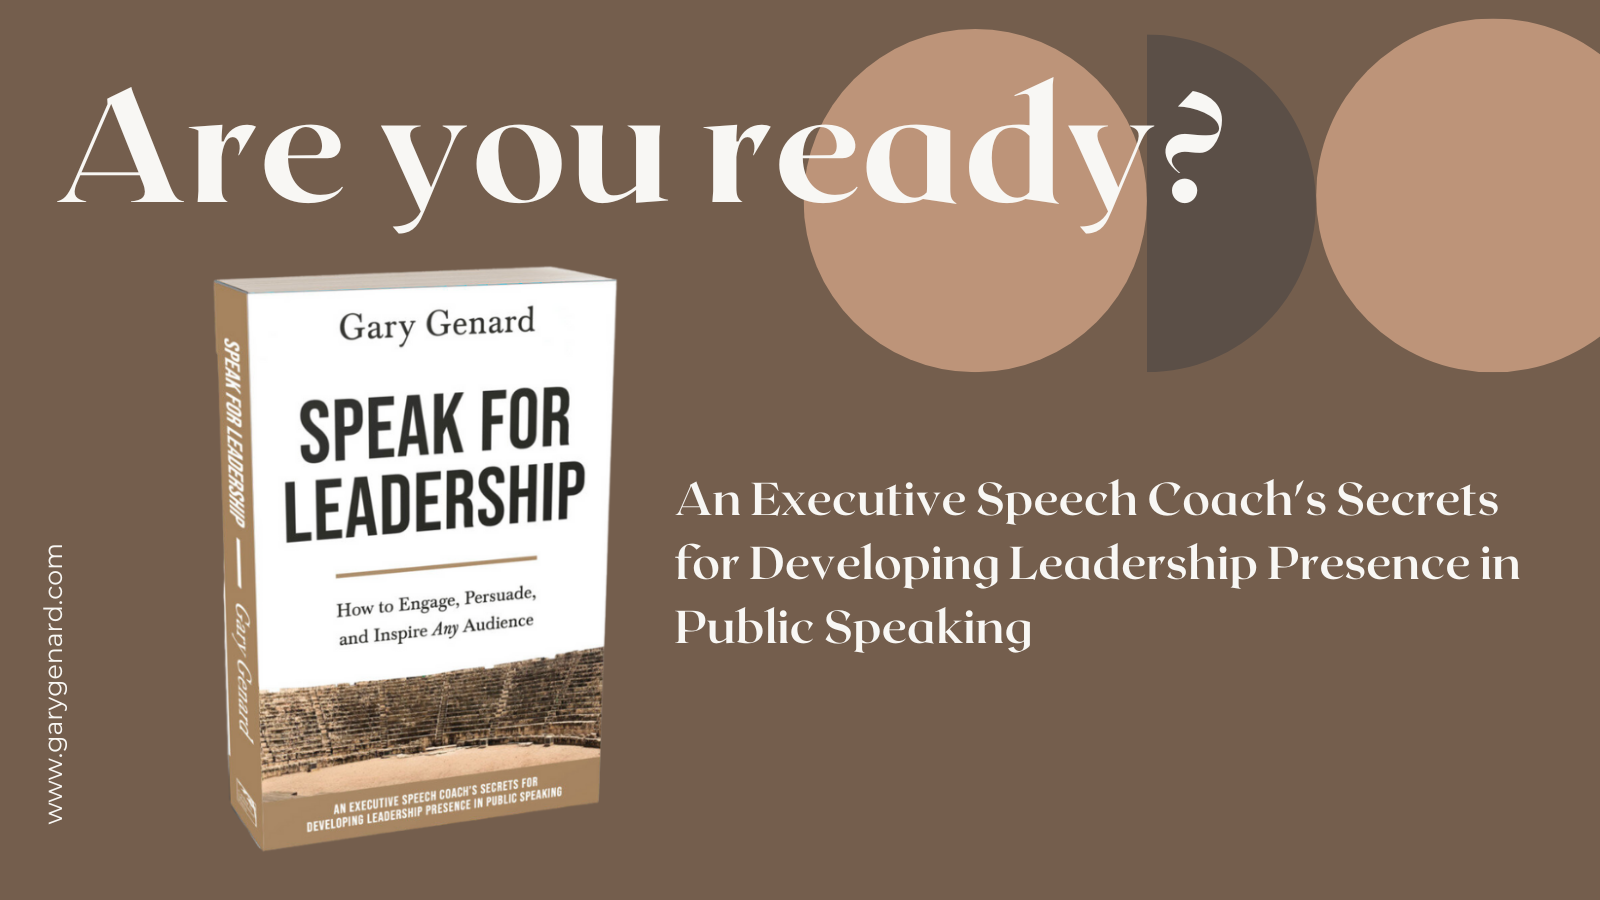 Le livre du Dr Gary Genard sur le fait de parler en tant que leader, Speak for Leadership.